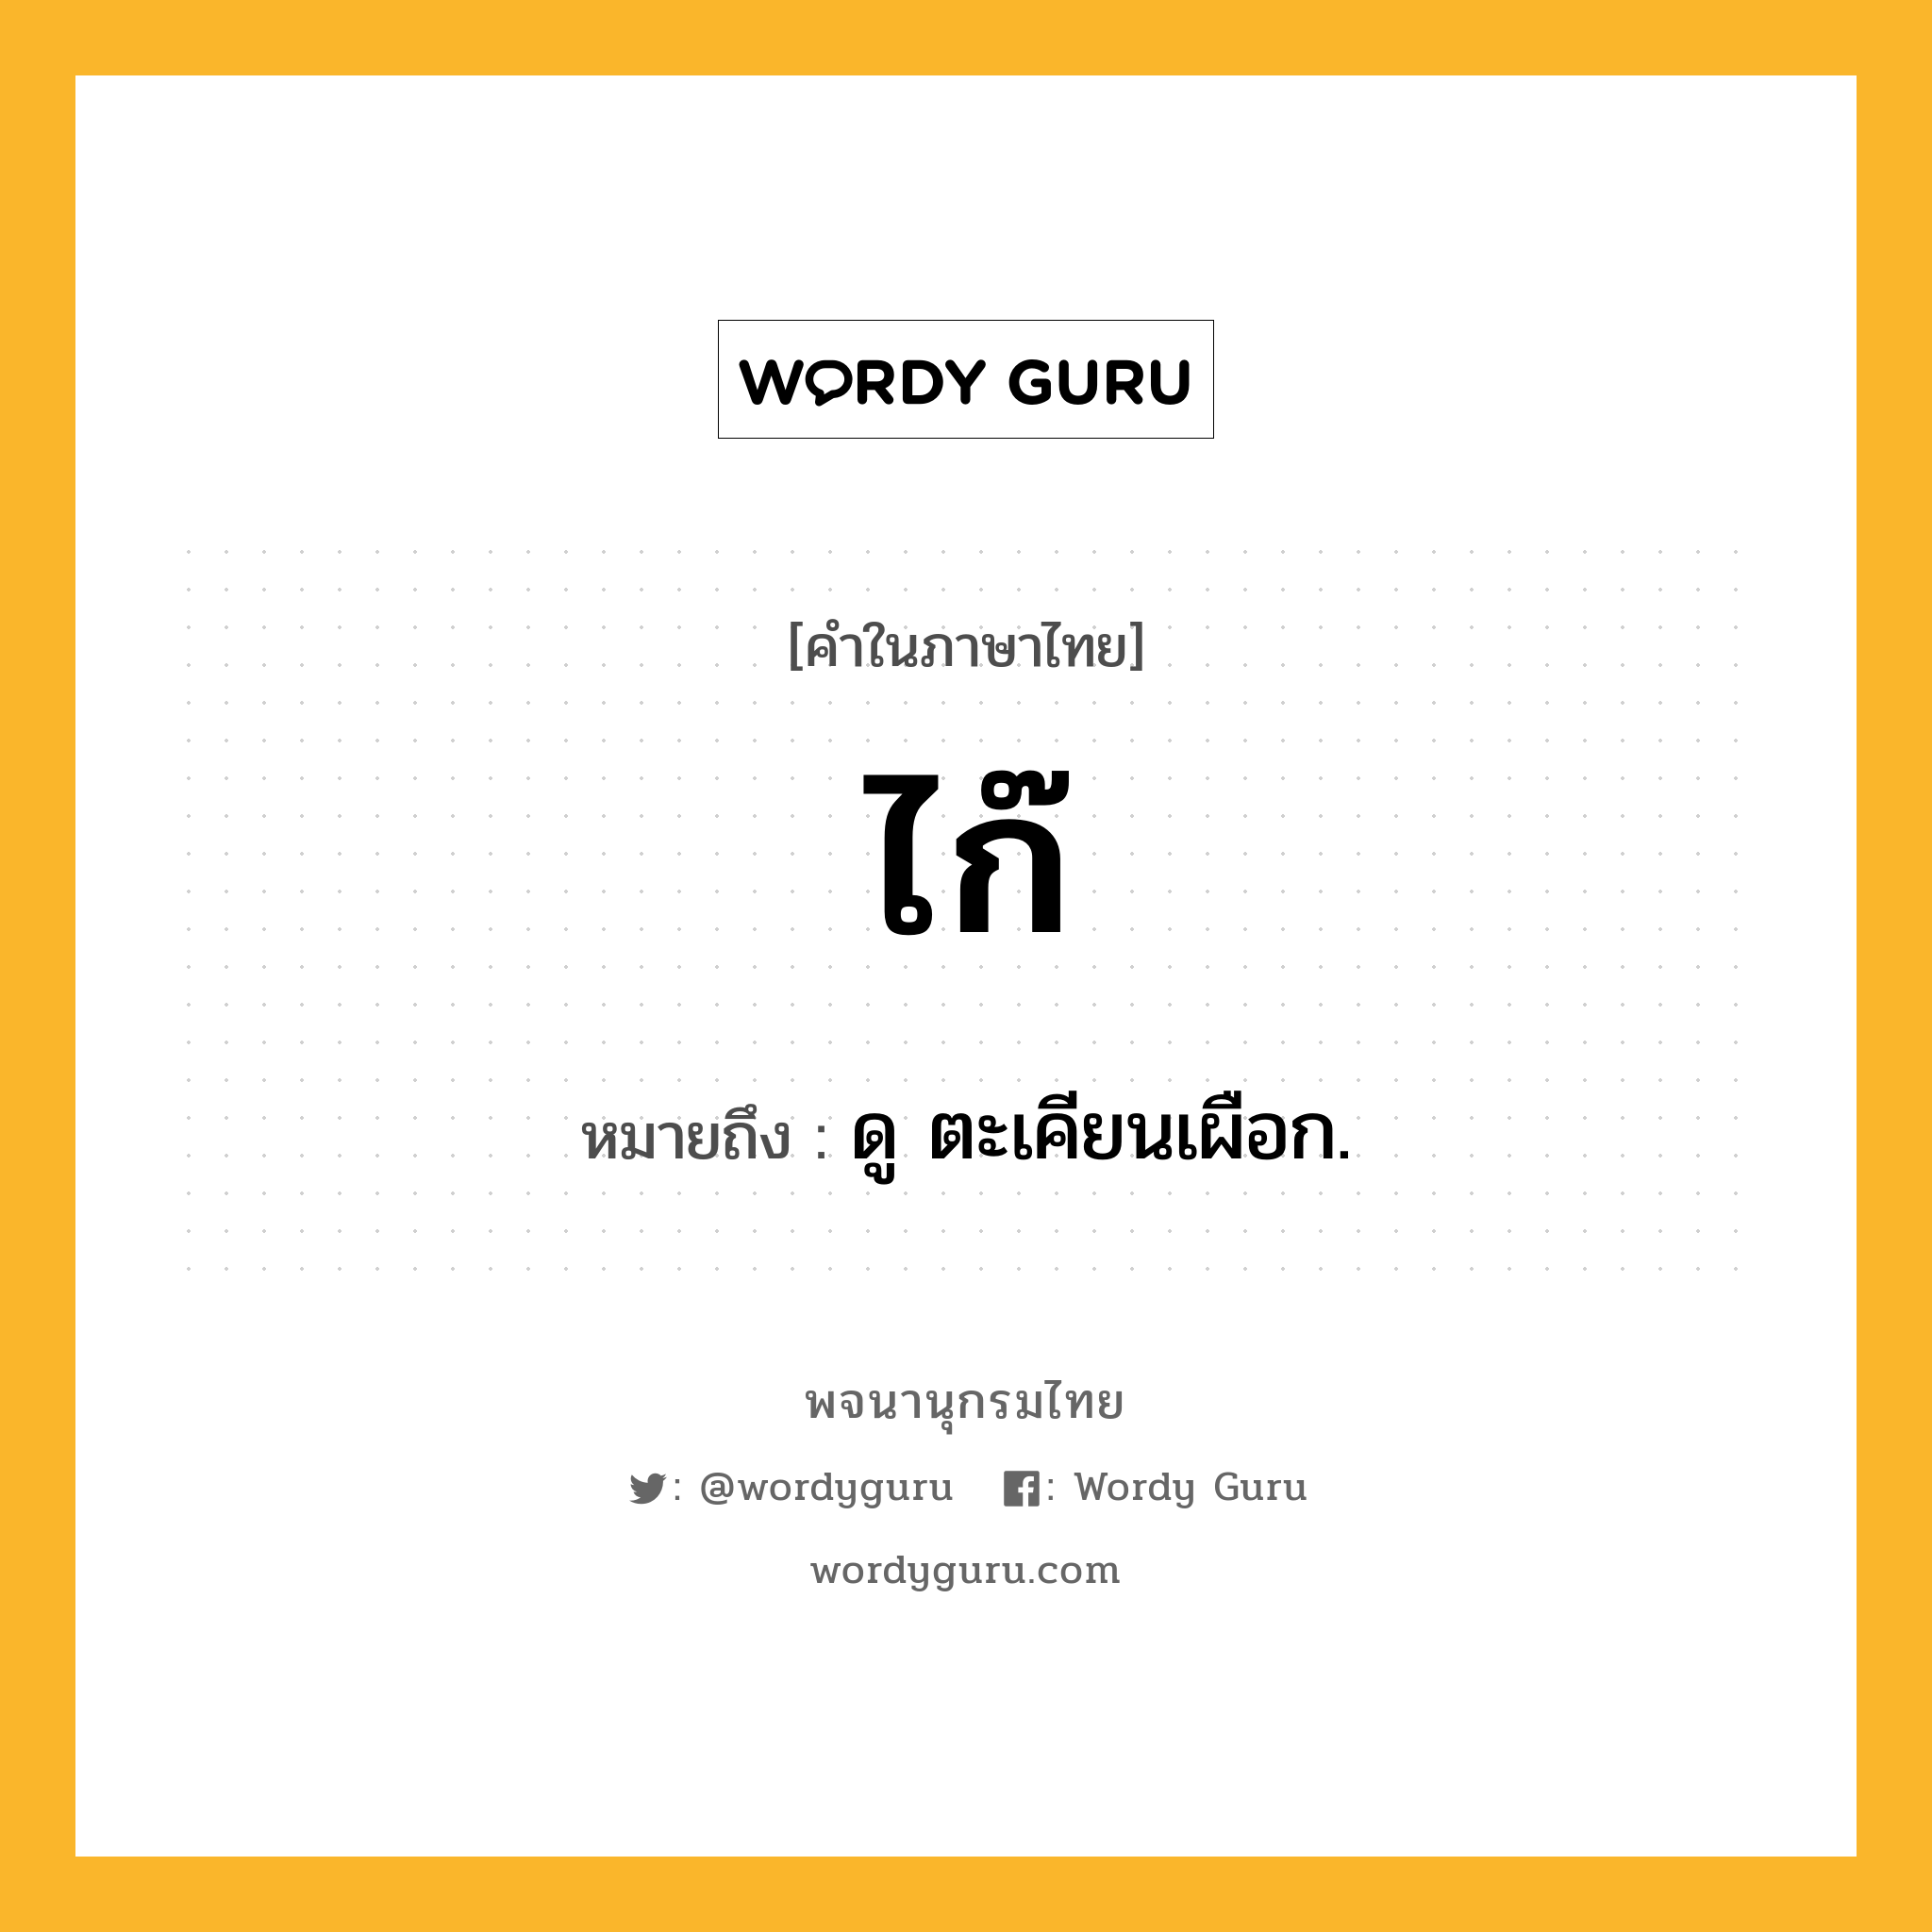 ไก๊ ความหมาย หมายถึงอะไร?, คำในภาษาไทย ไก๊ หมายถึง ดู ตะเคียนเผือก.